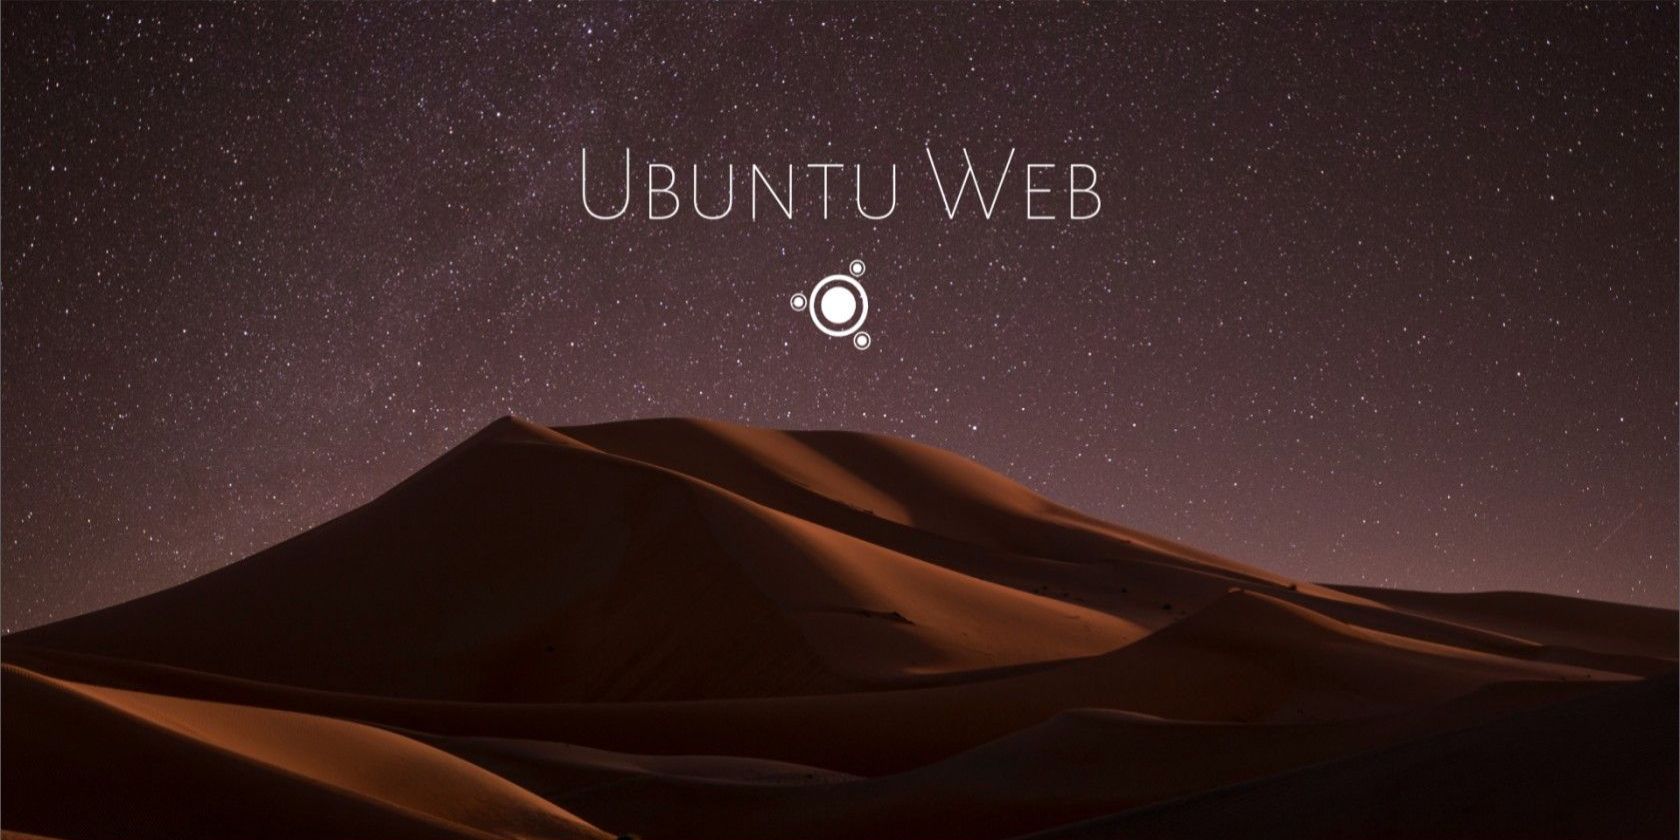 Ubuntu-web-desktop interface